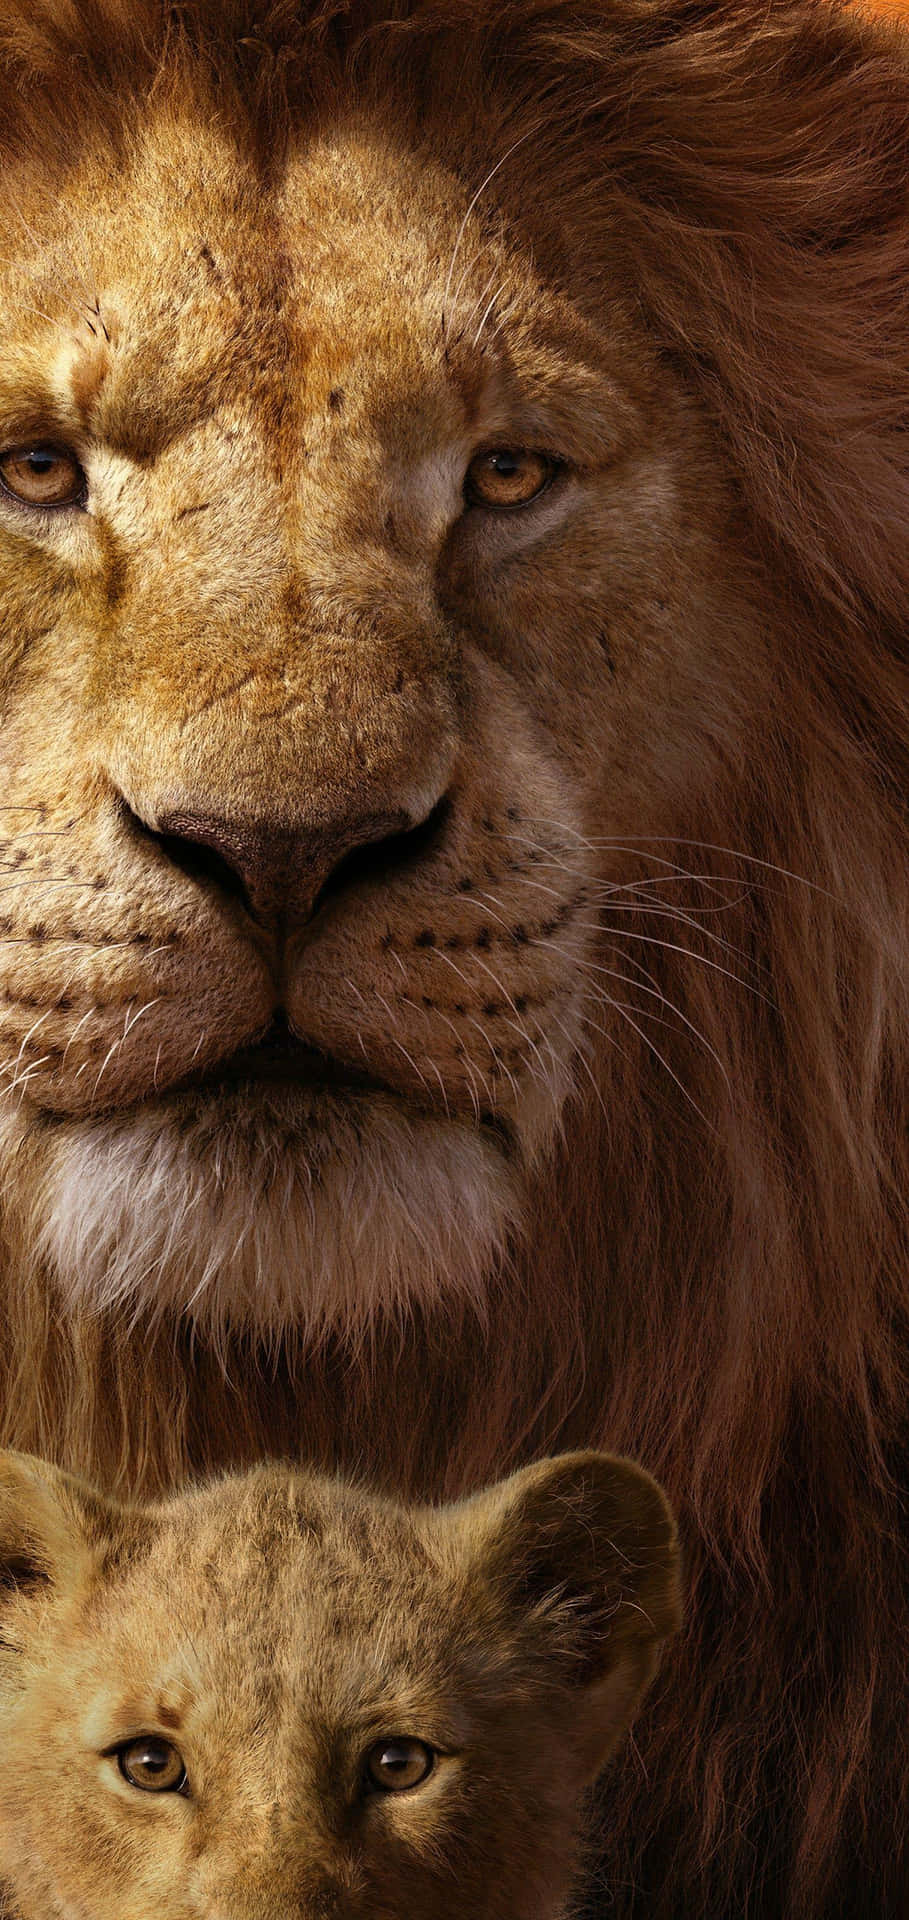 Majestic Lionand Cub Portrait Background